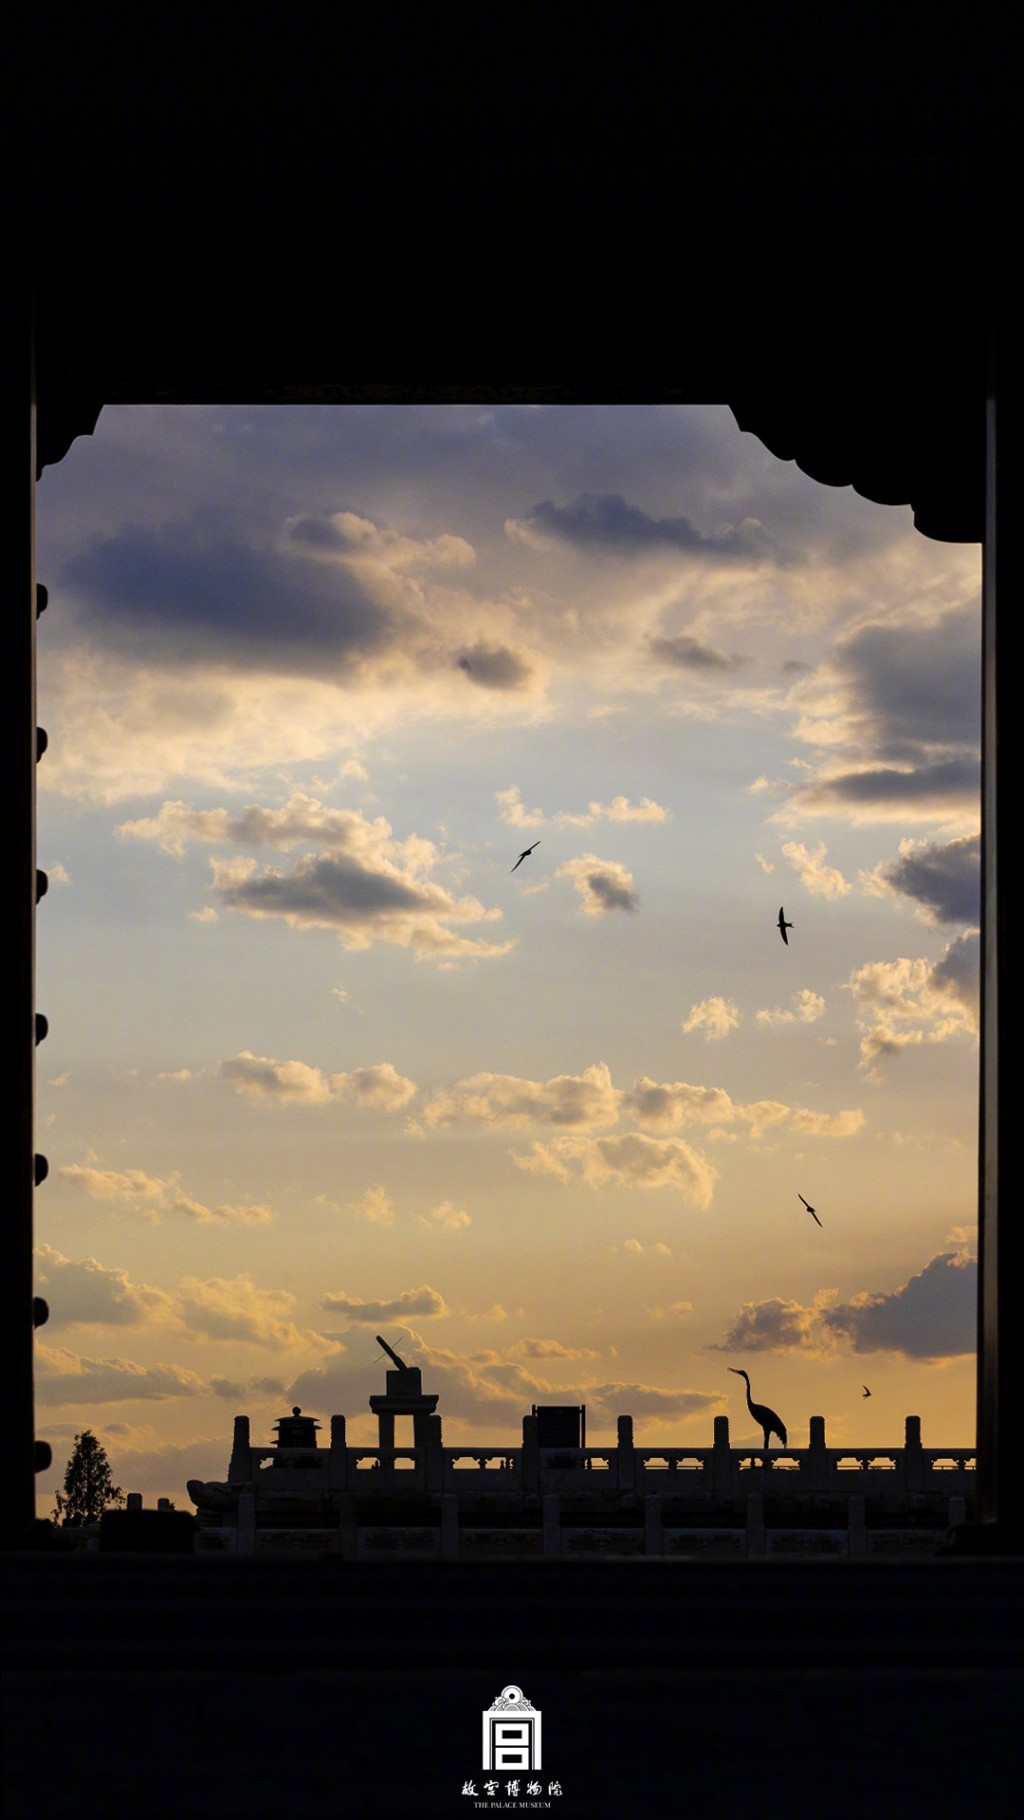 故宫博物院夕阳云彩风景手机壁纸